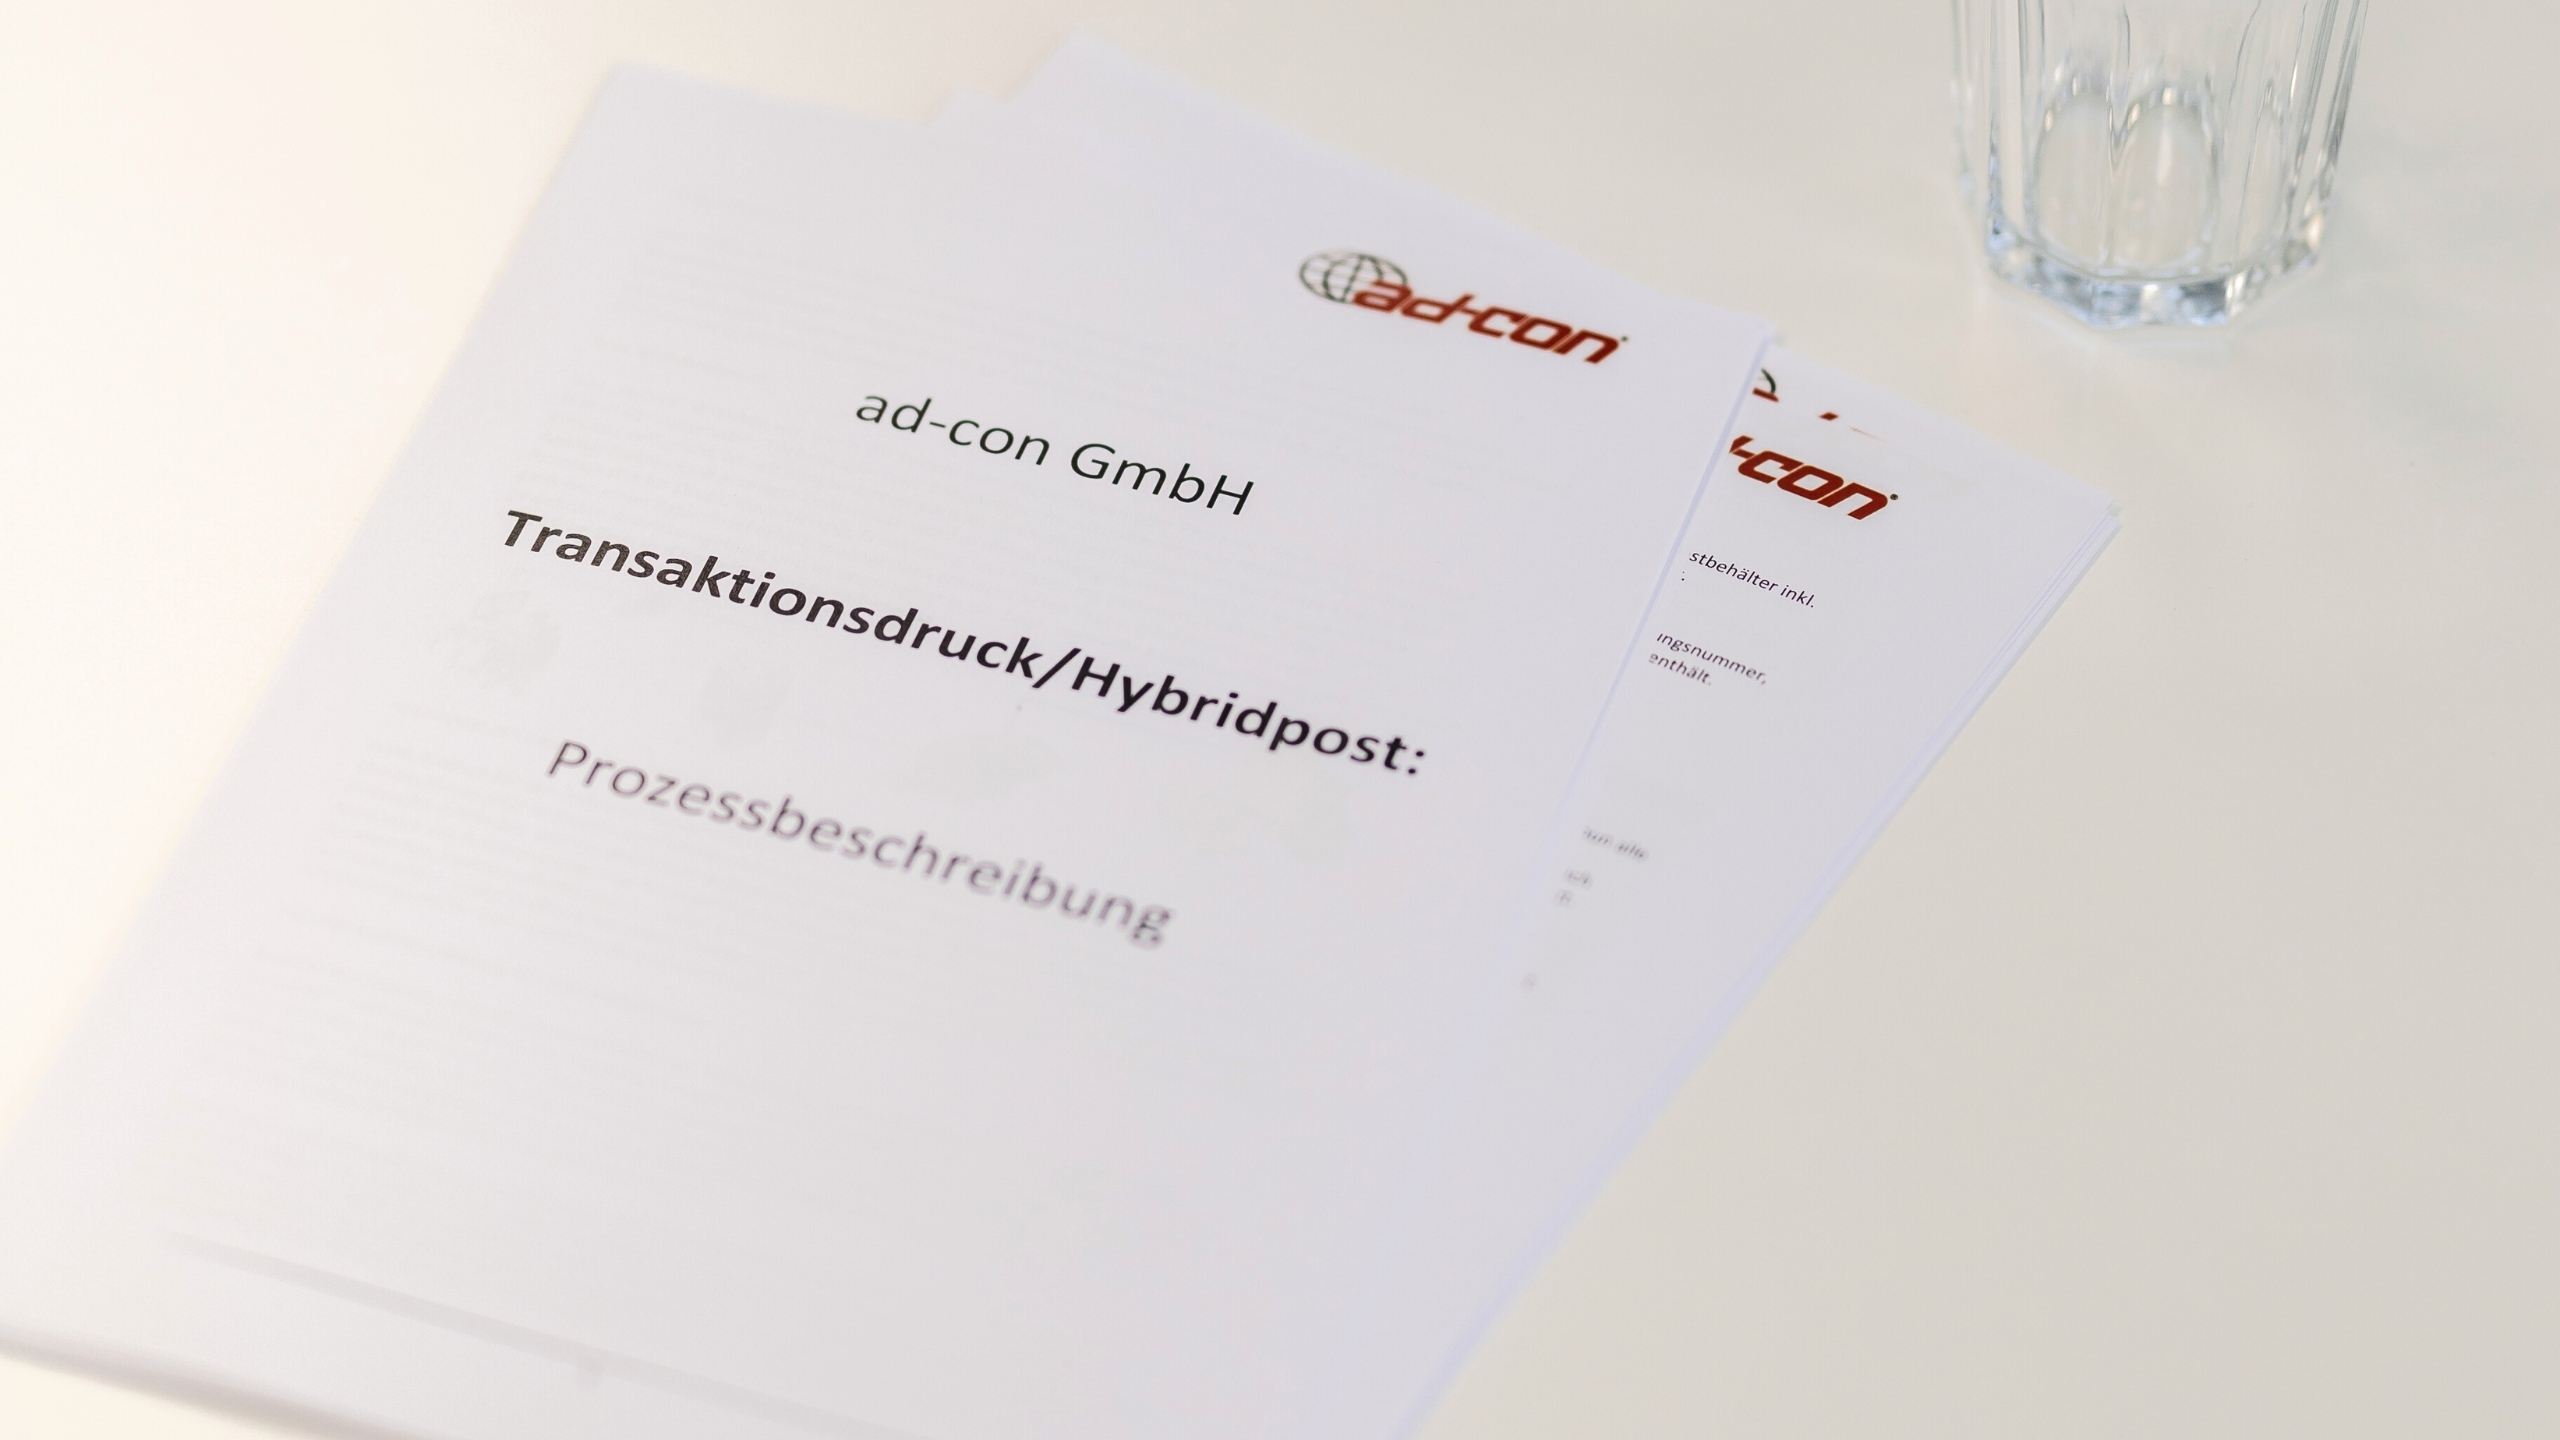 Papierausdrucke liegen auf dem Tisch. Auf der Titelseite ist das ad-con GmbH Logo und der Titel Transaktionsdruck/Hybridpost: Prozessbeschreibung